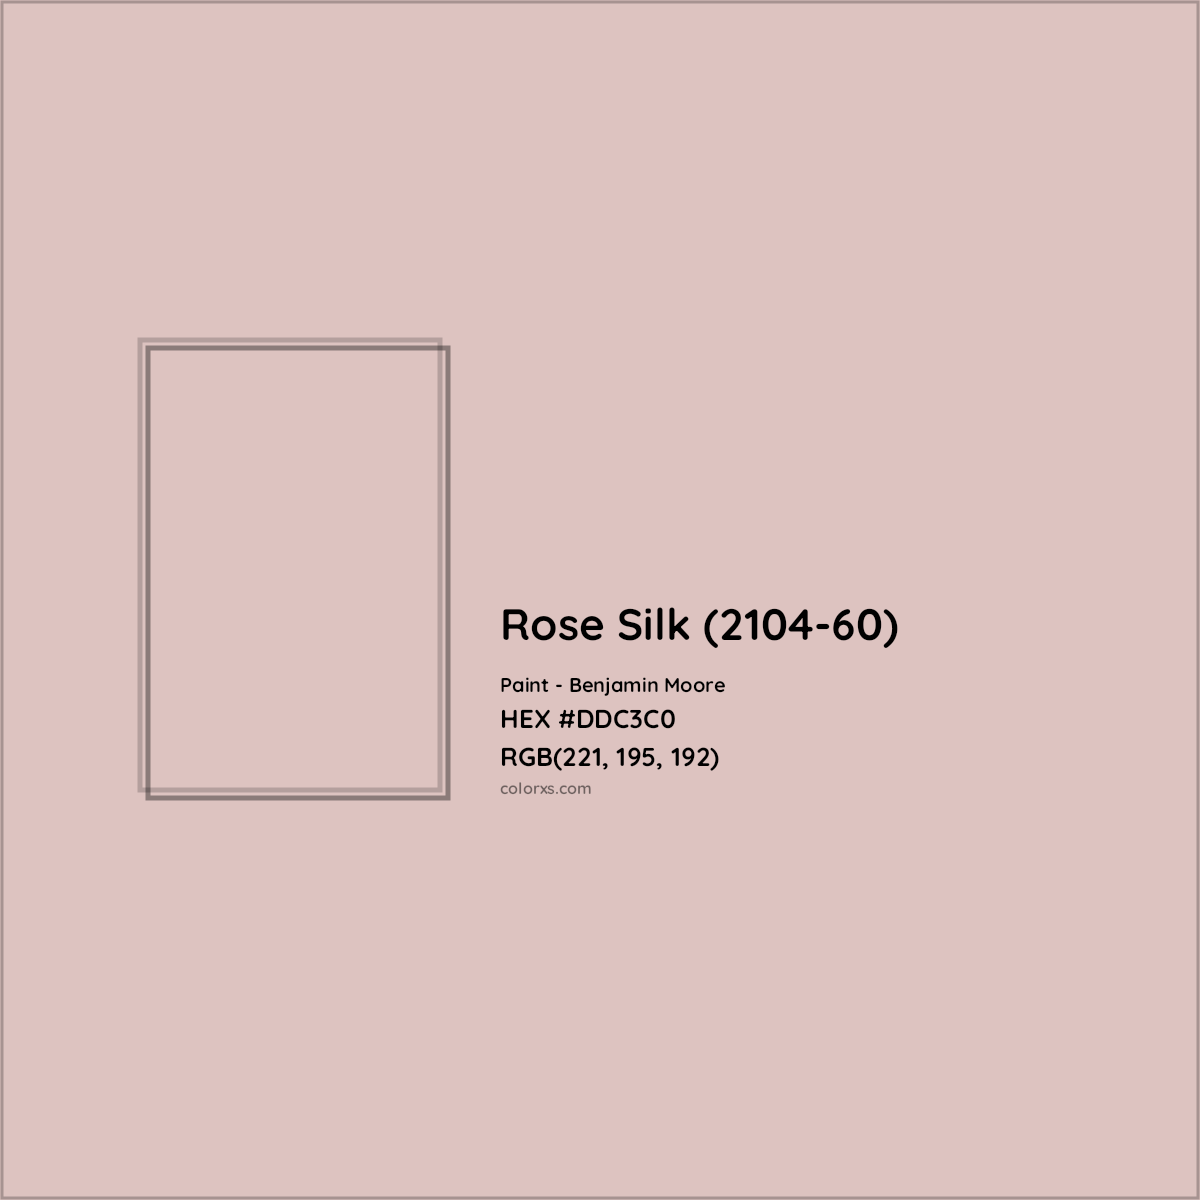 HEX #DDC3C0 Rose Silk (2104-60) Paint Benjamin Moore - Color Code